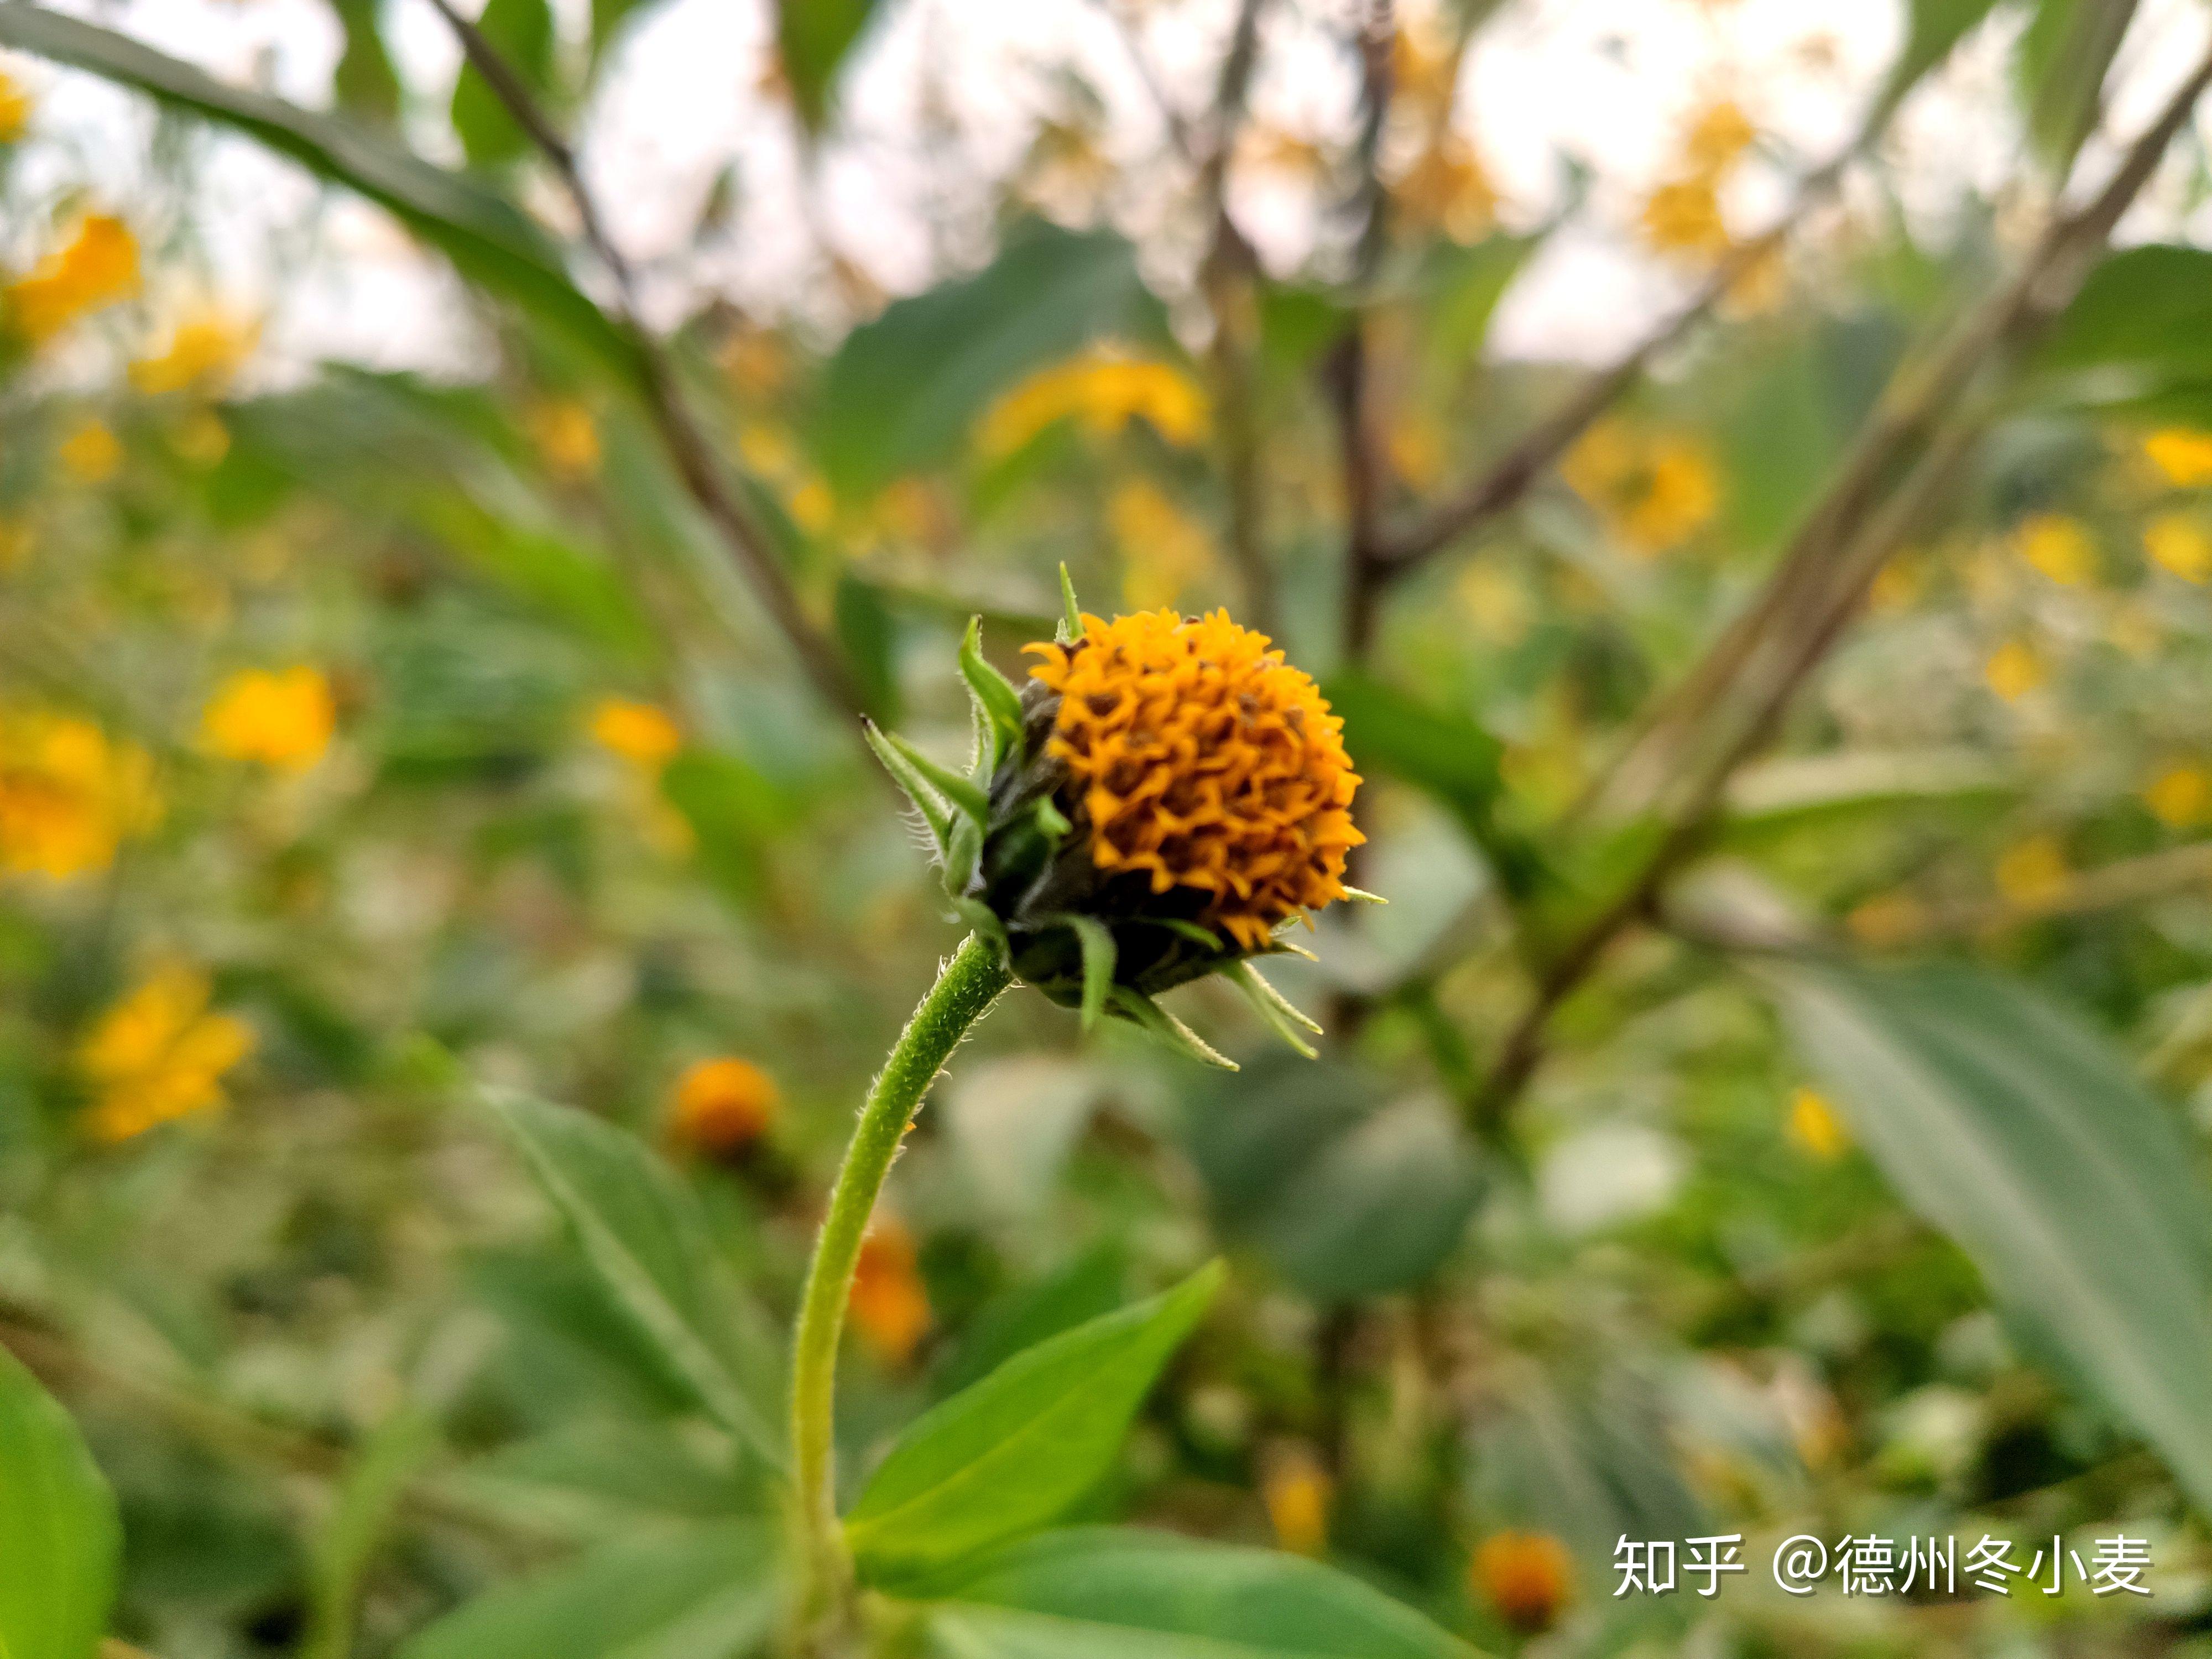 米9手机镜头下的洋姜——其黄色花挺美